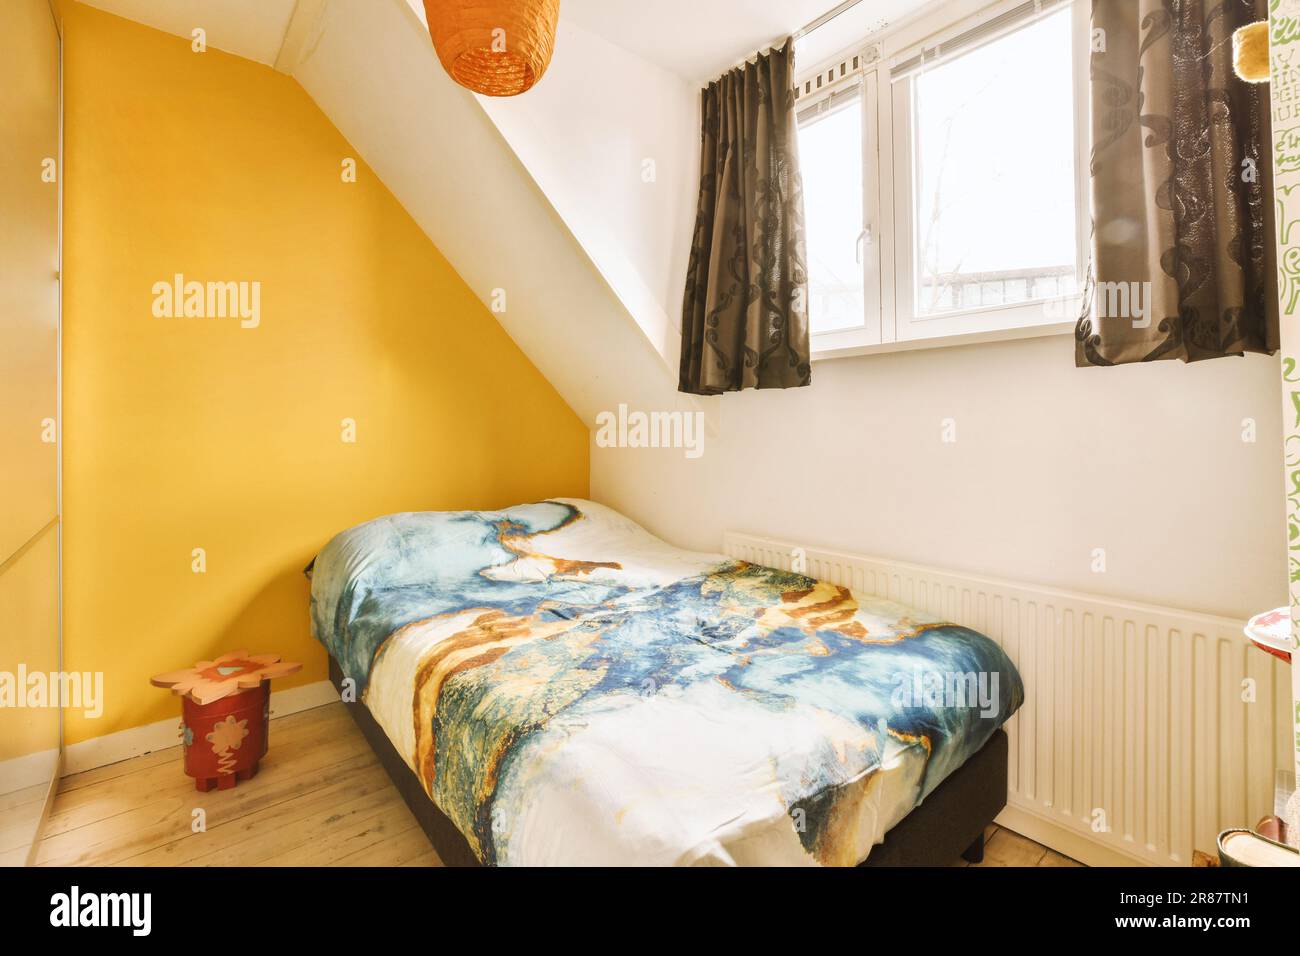 Neben dem Bett befindet sich ein Bett in der Ecke eines Zimmers mit gelben Wänden und weißen Verzierungen am Fenster Stockfoto